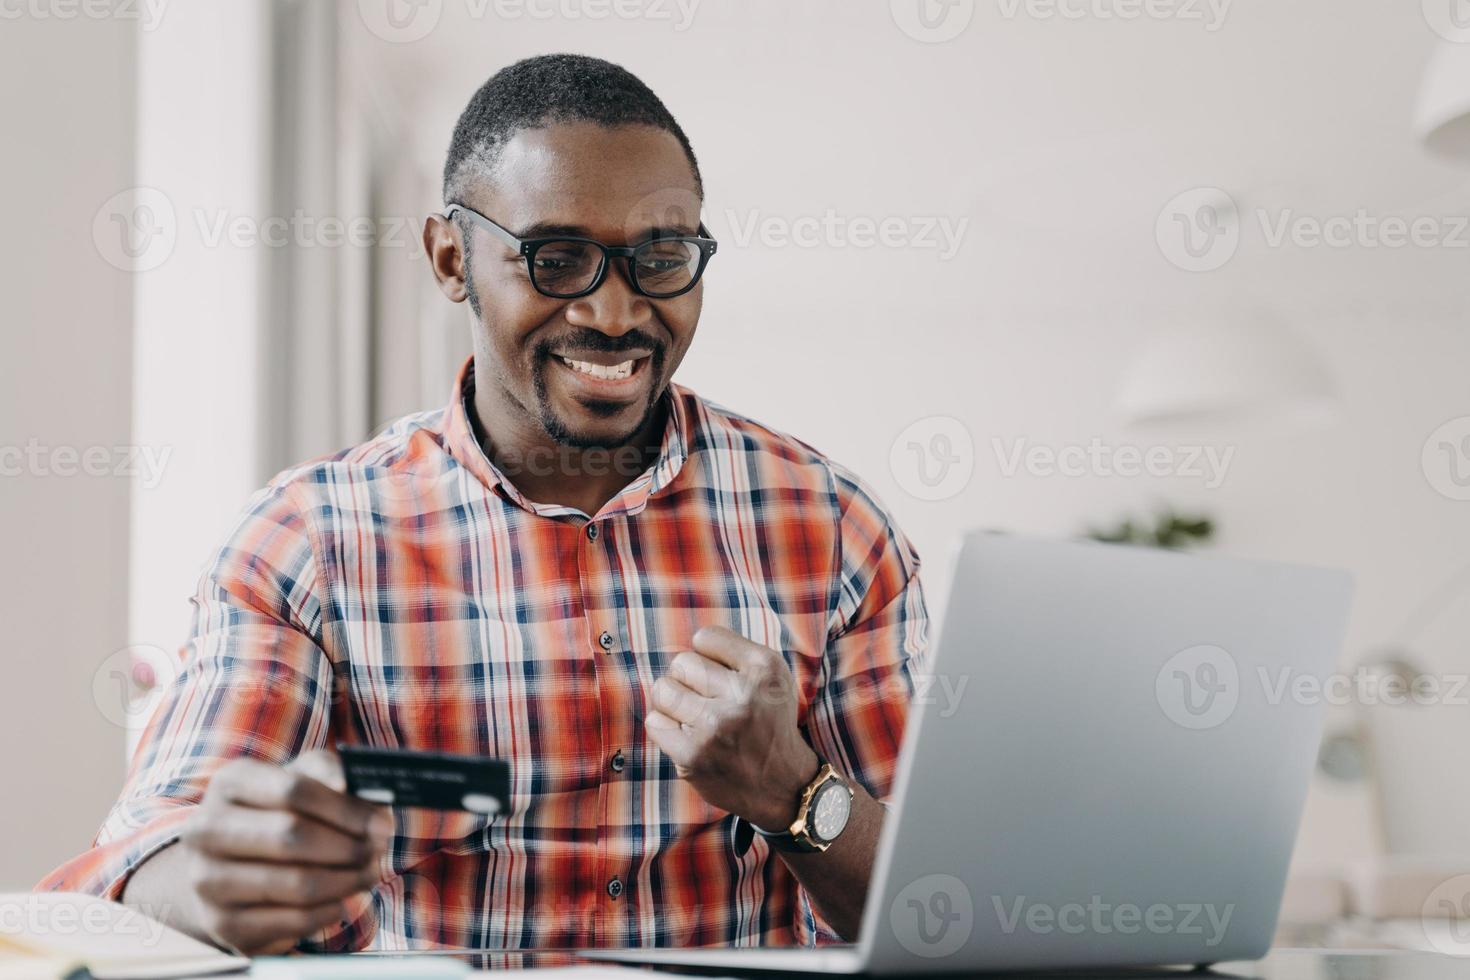 banque en ligne, commerce électronique. un homme afro-américain tenant une carte de crédit utilise un service en ligne de banque électronique sur un ordinateur portable photo